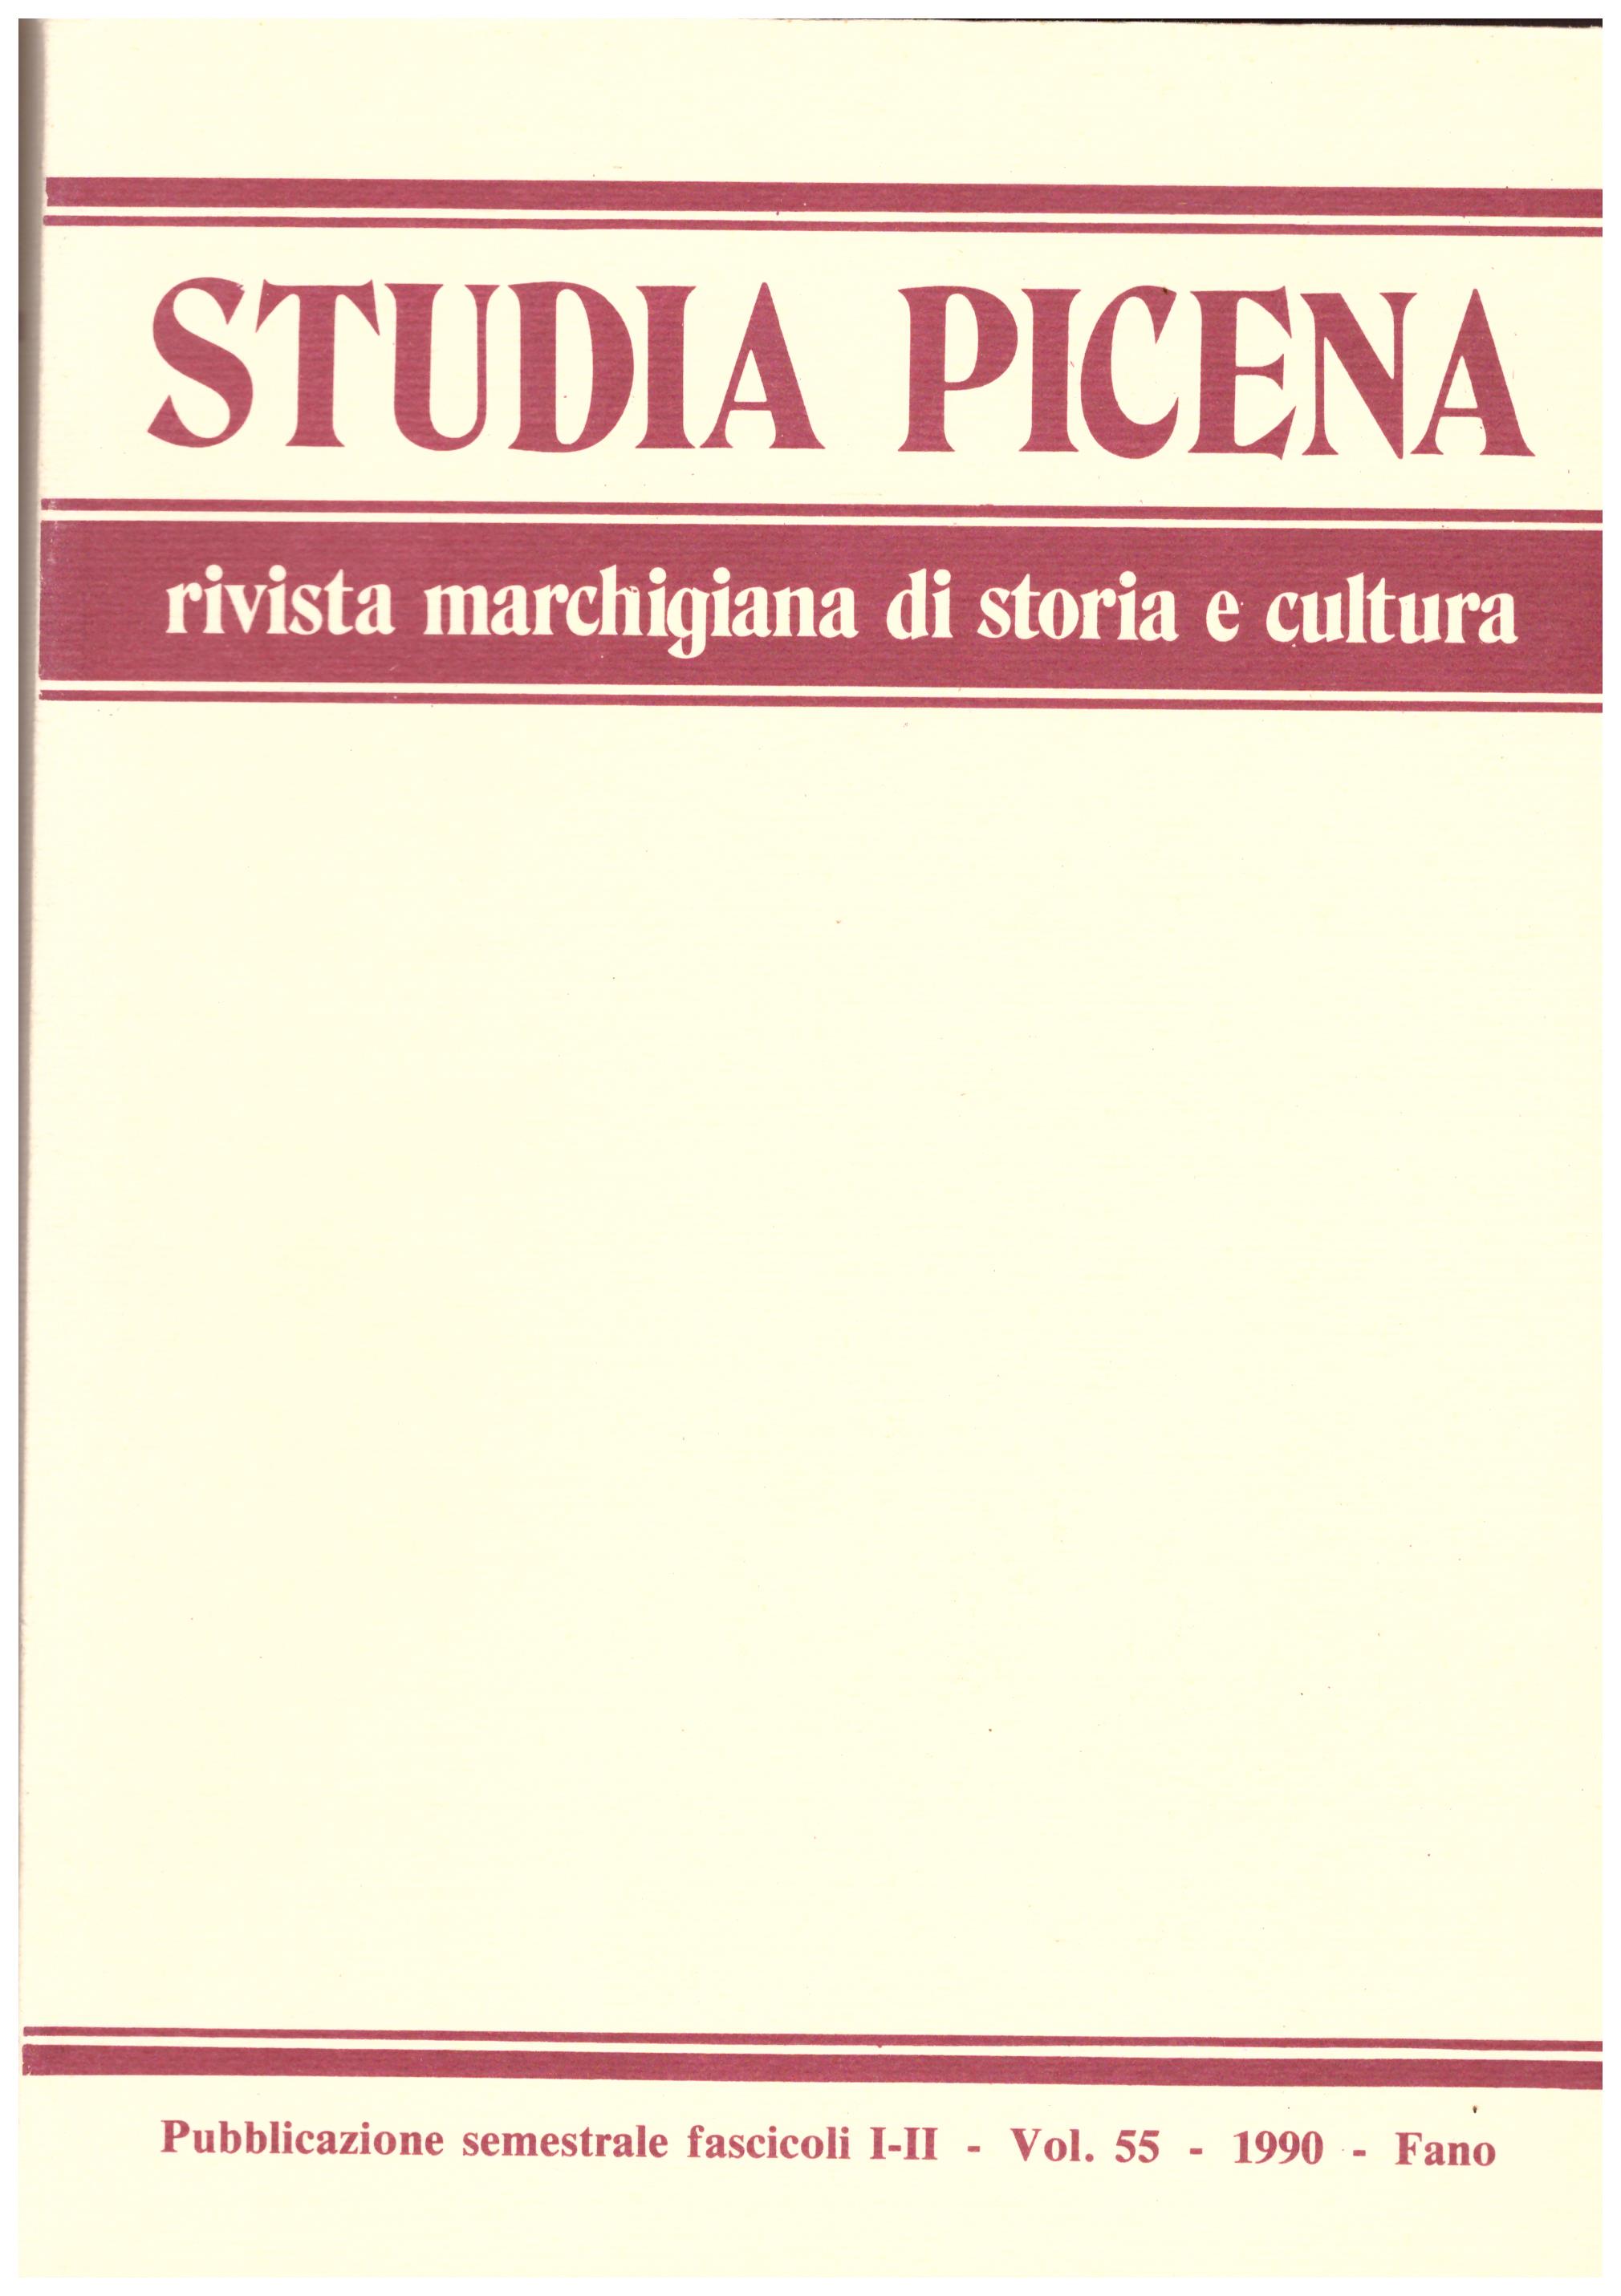 Titolo: Studia picena, Rivista marchigiana di storia e cultura vol.55 1990   Autore : AA.VV.  Editore: Offset stampa Fano 1990